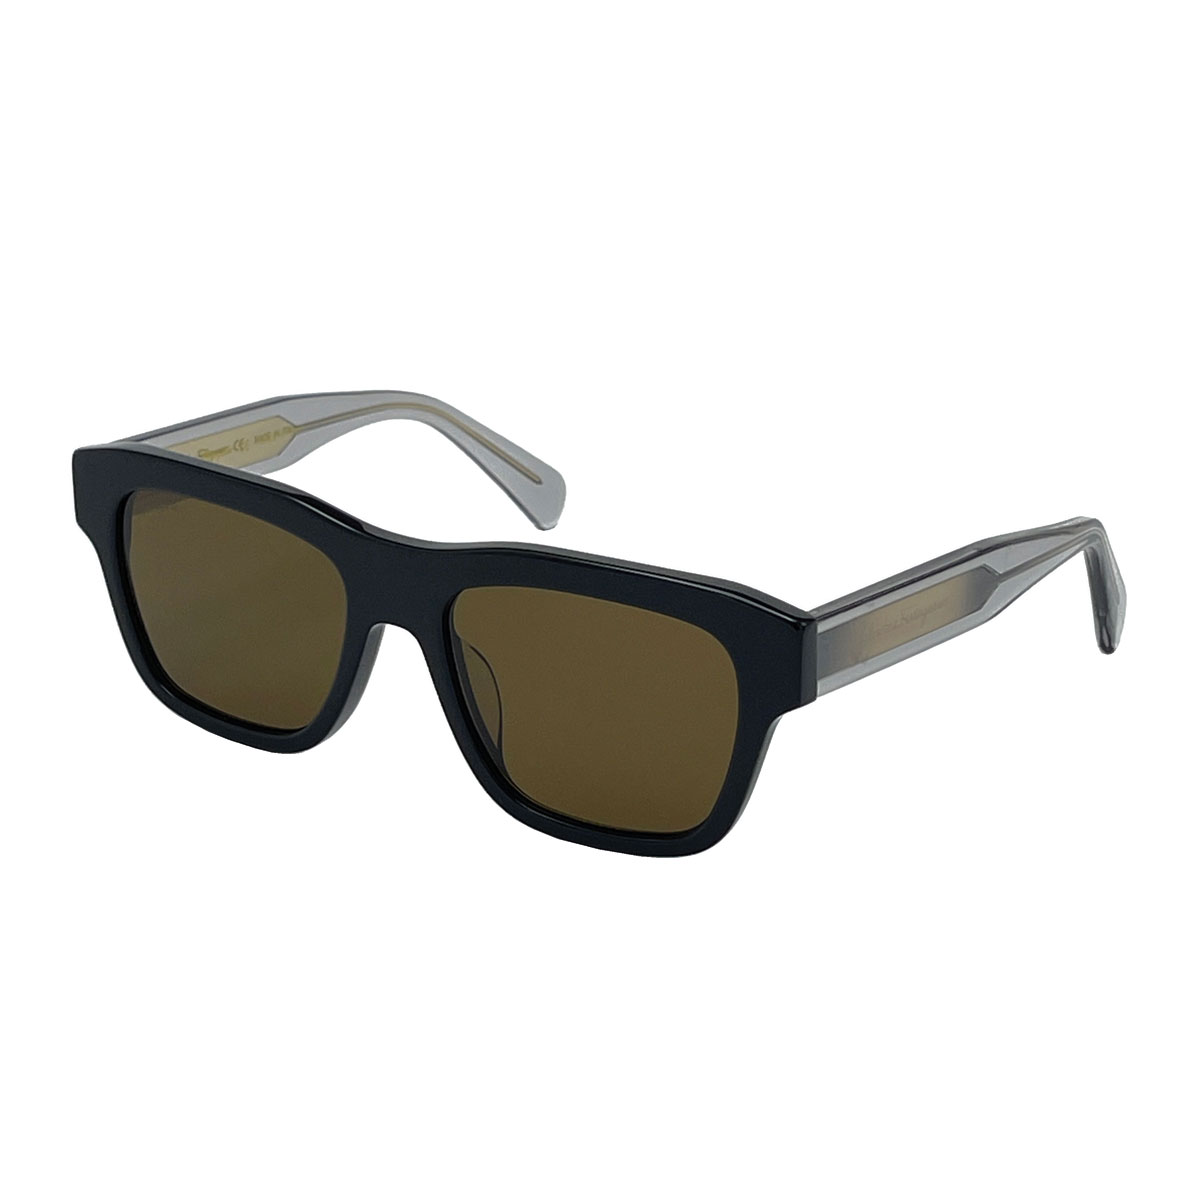 عینک آفتابی مردانه سالواتوره فراگامو مدل 51G087 - 746 -  - 3